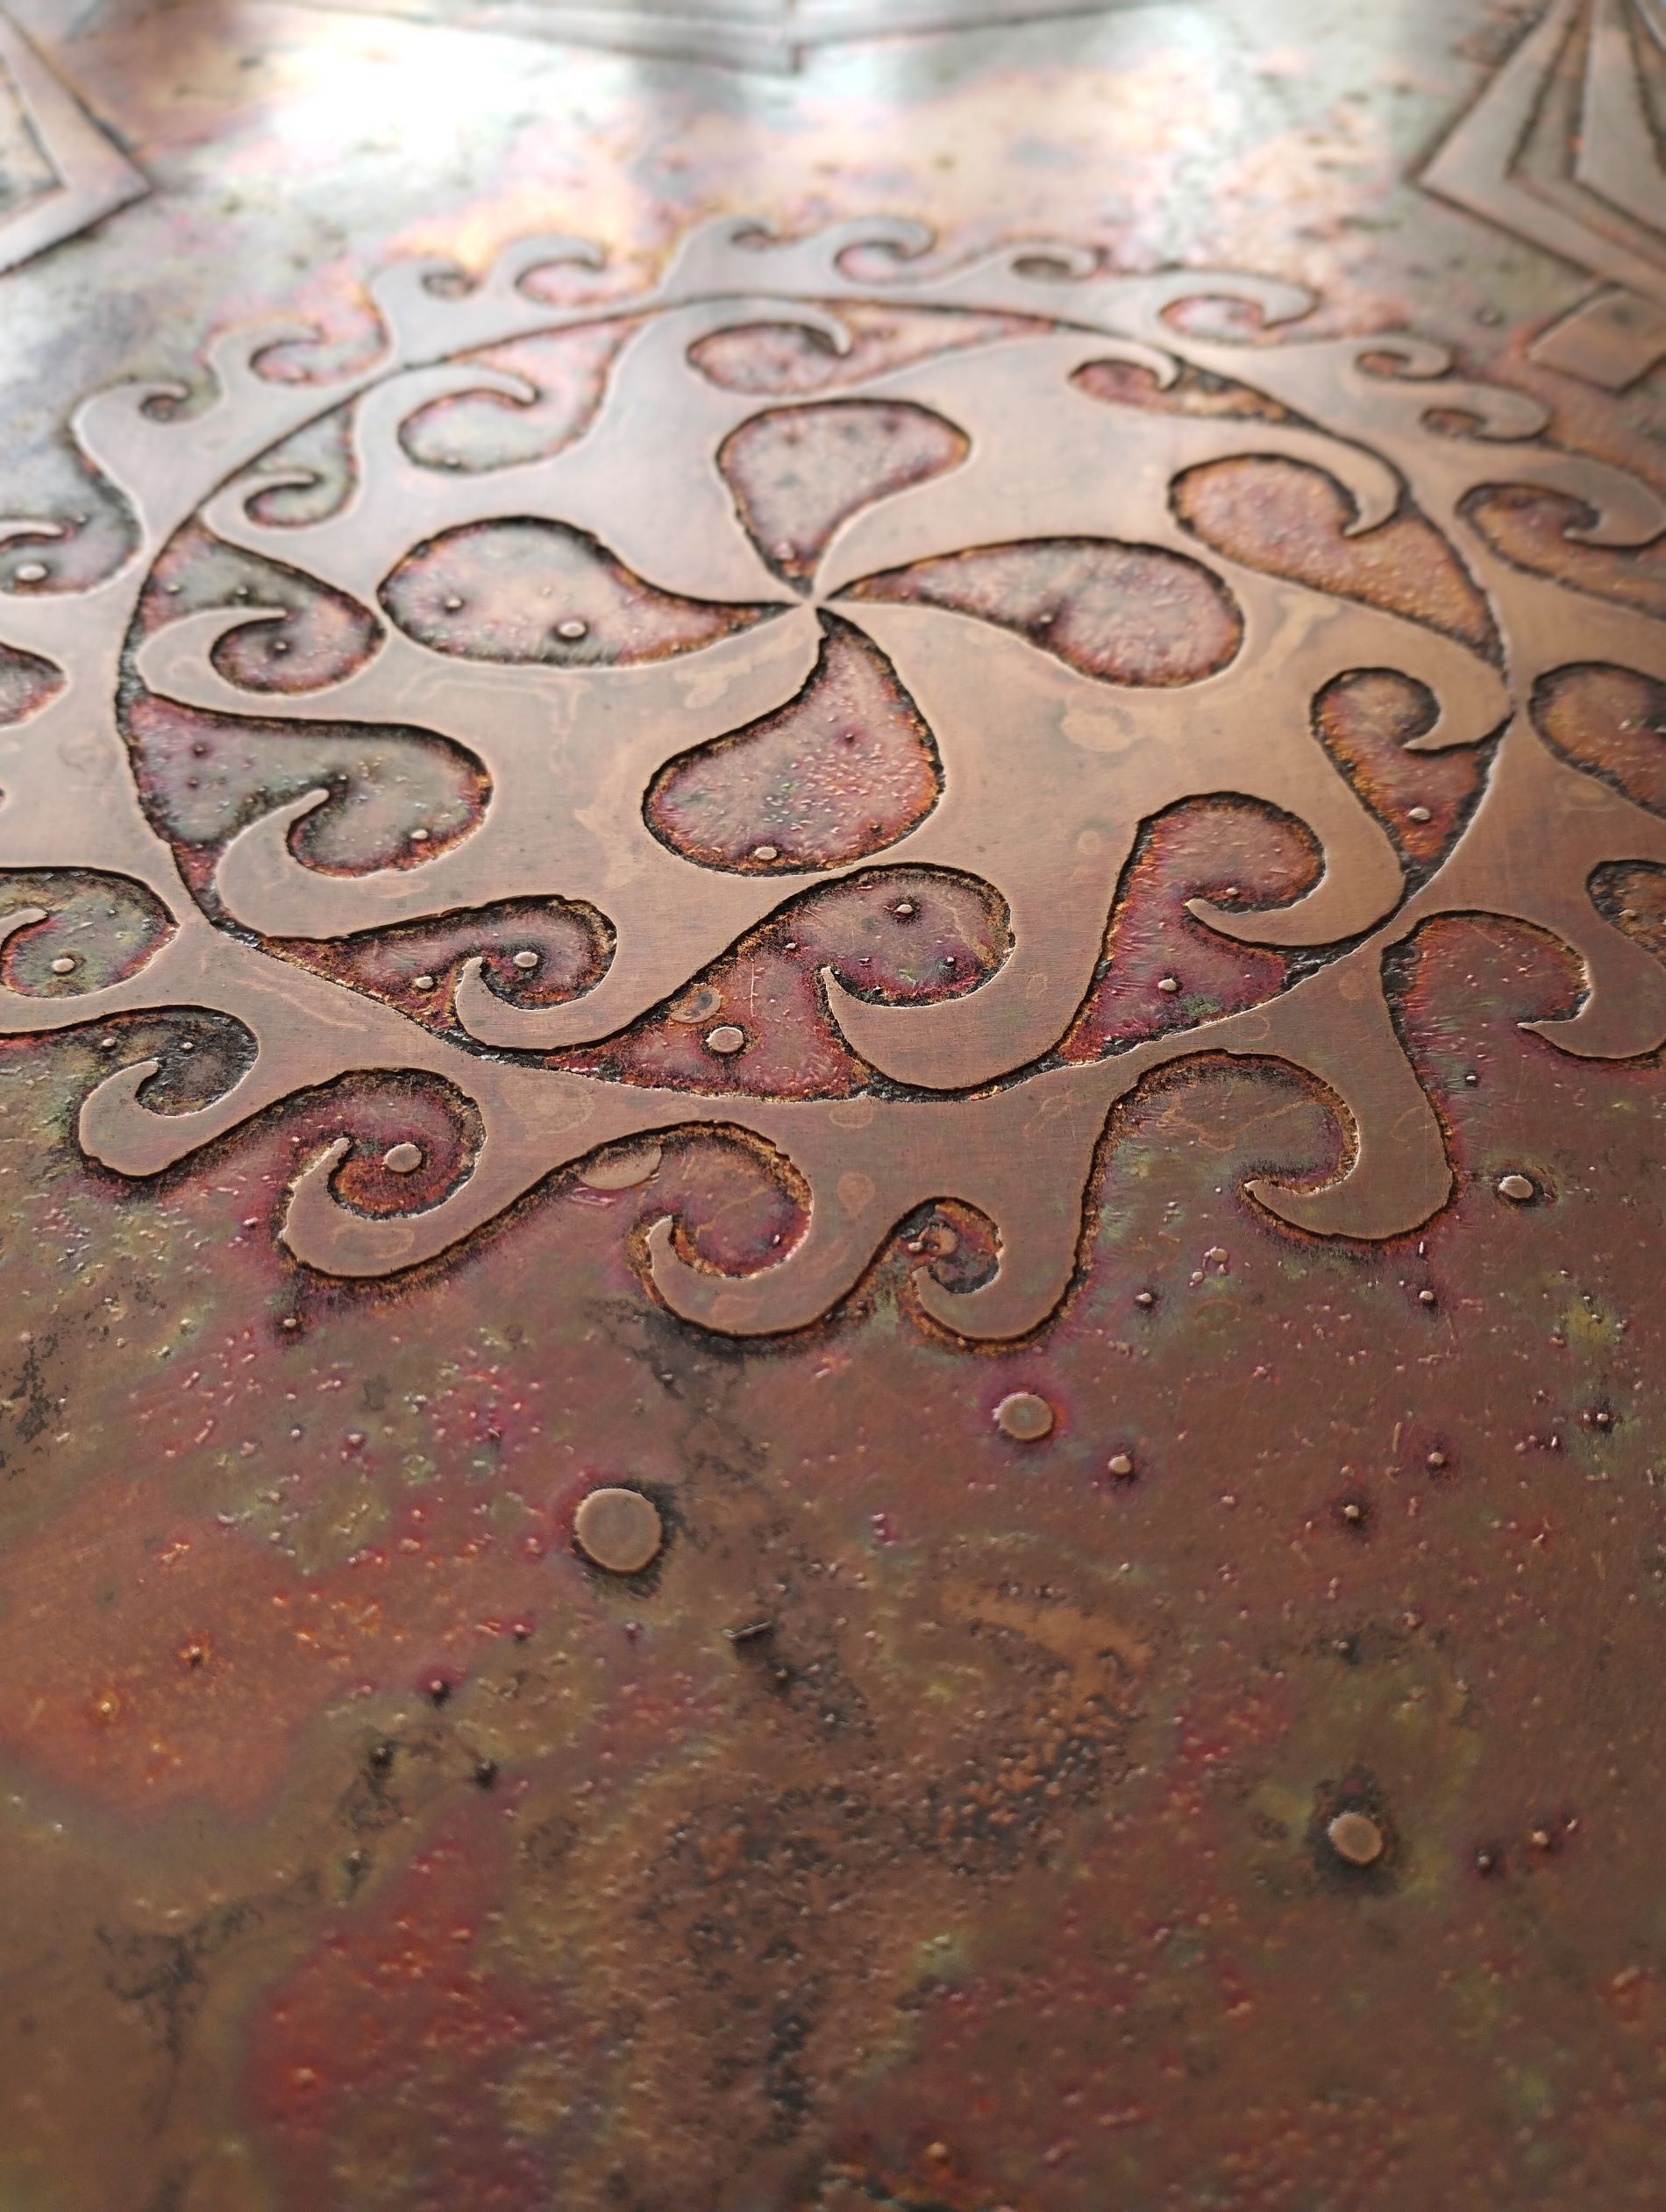 gravure sur cuivre Le motif est croix basque encerclée d'un motif de vagues. La Patine de finition est naturelle et brulée. La texture du cuivre ressort avec des effets rouge et orange parfois brun.